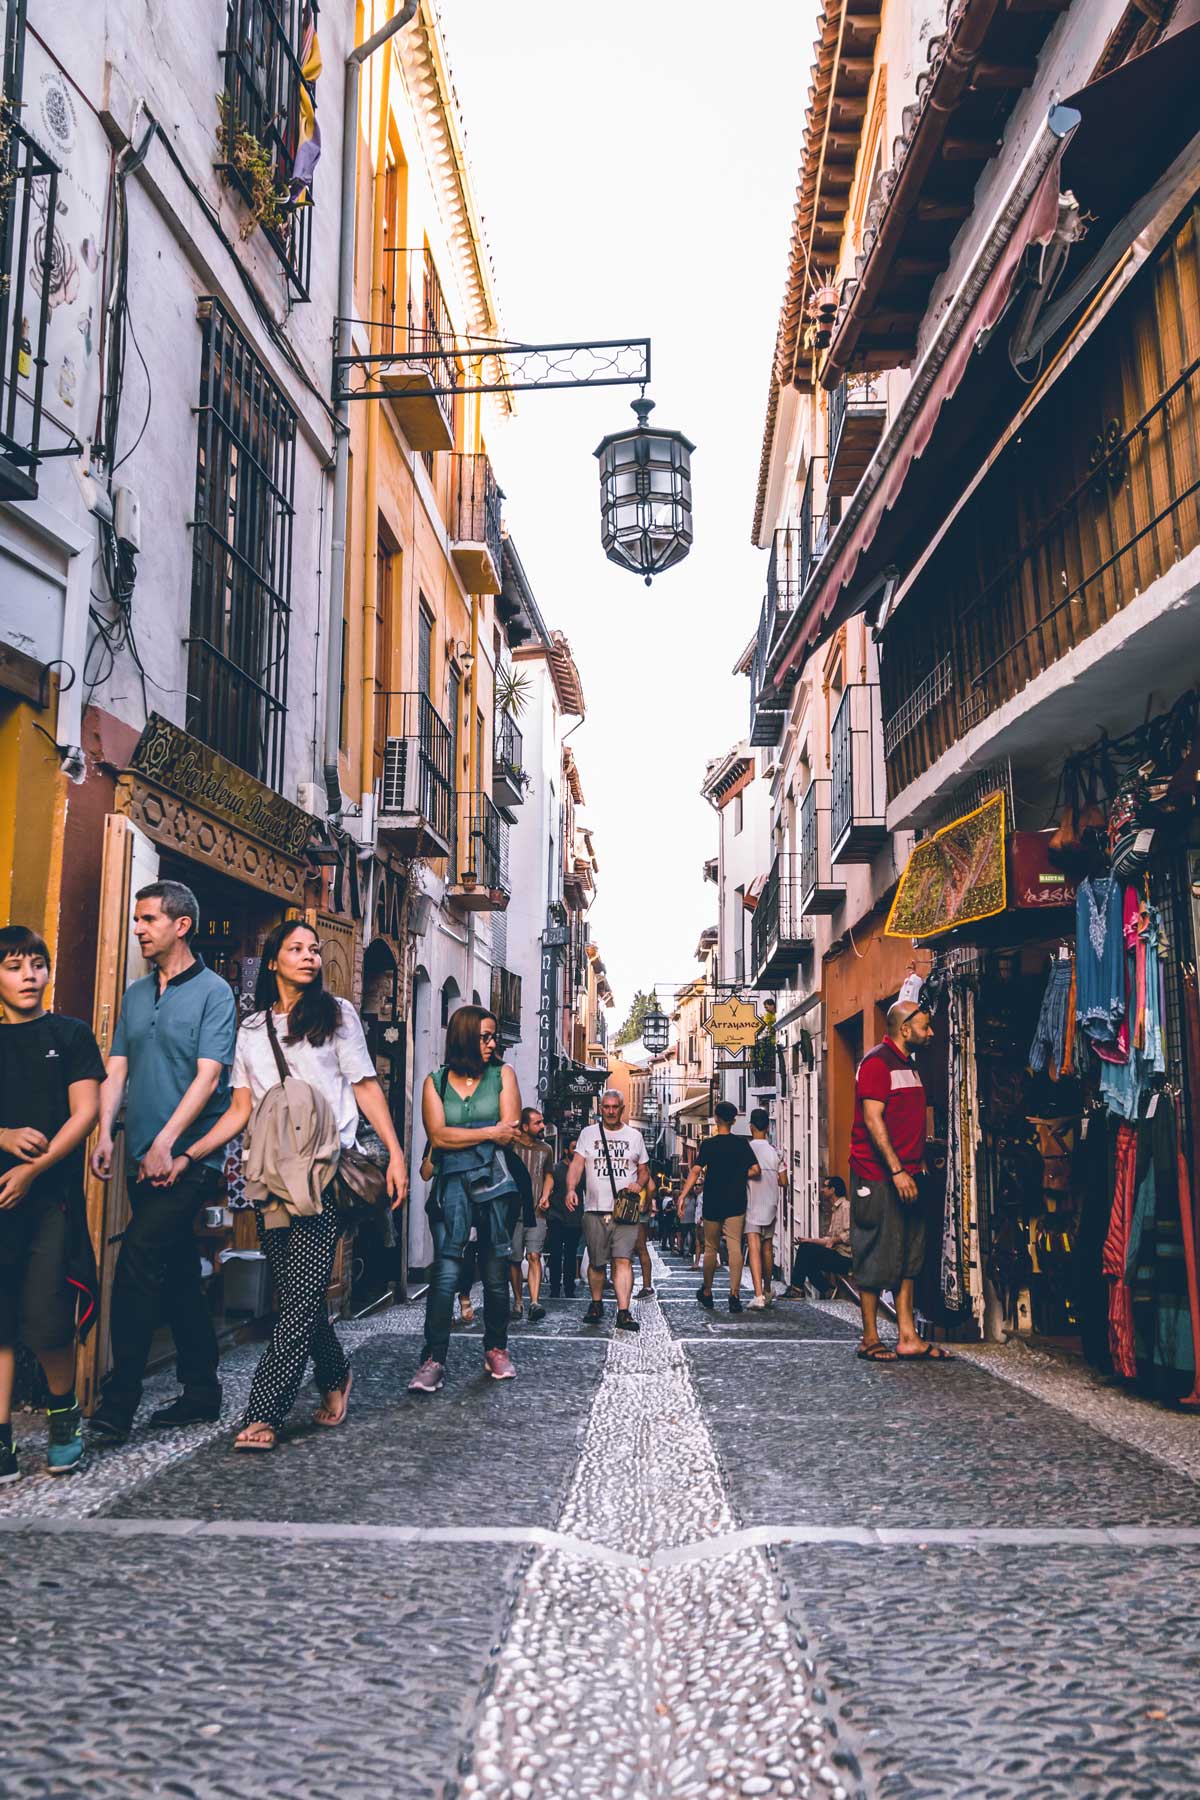 People walking down an atmospheric street in old town Granada Spain. 